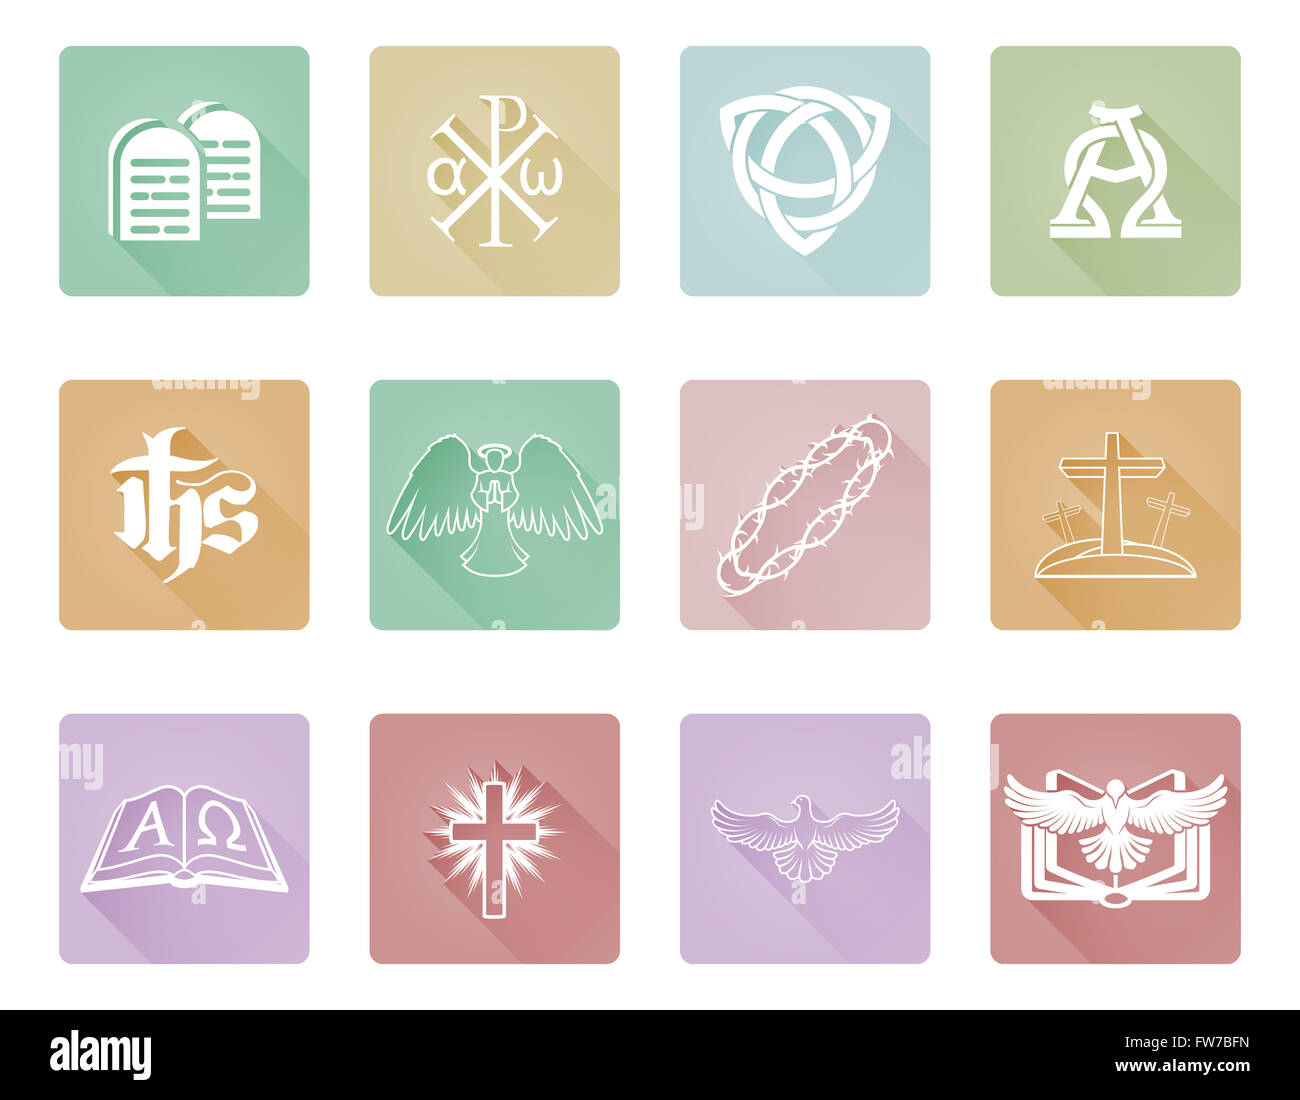 Un ensemble d'icônes et symboles religieux chrétiens avec Chi Rho, Angel, alpha omega et plus Banque D'Images